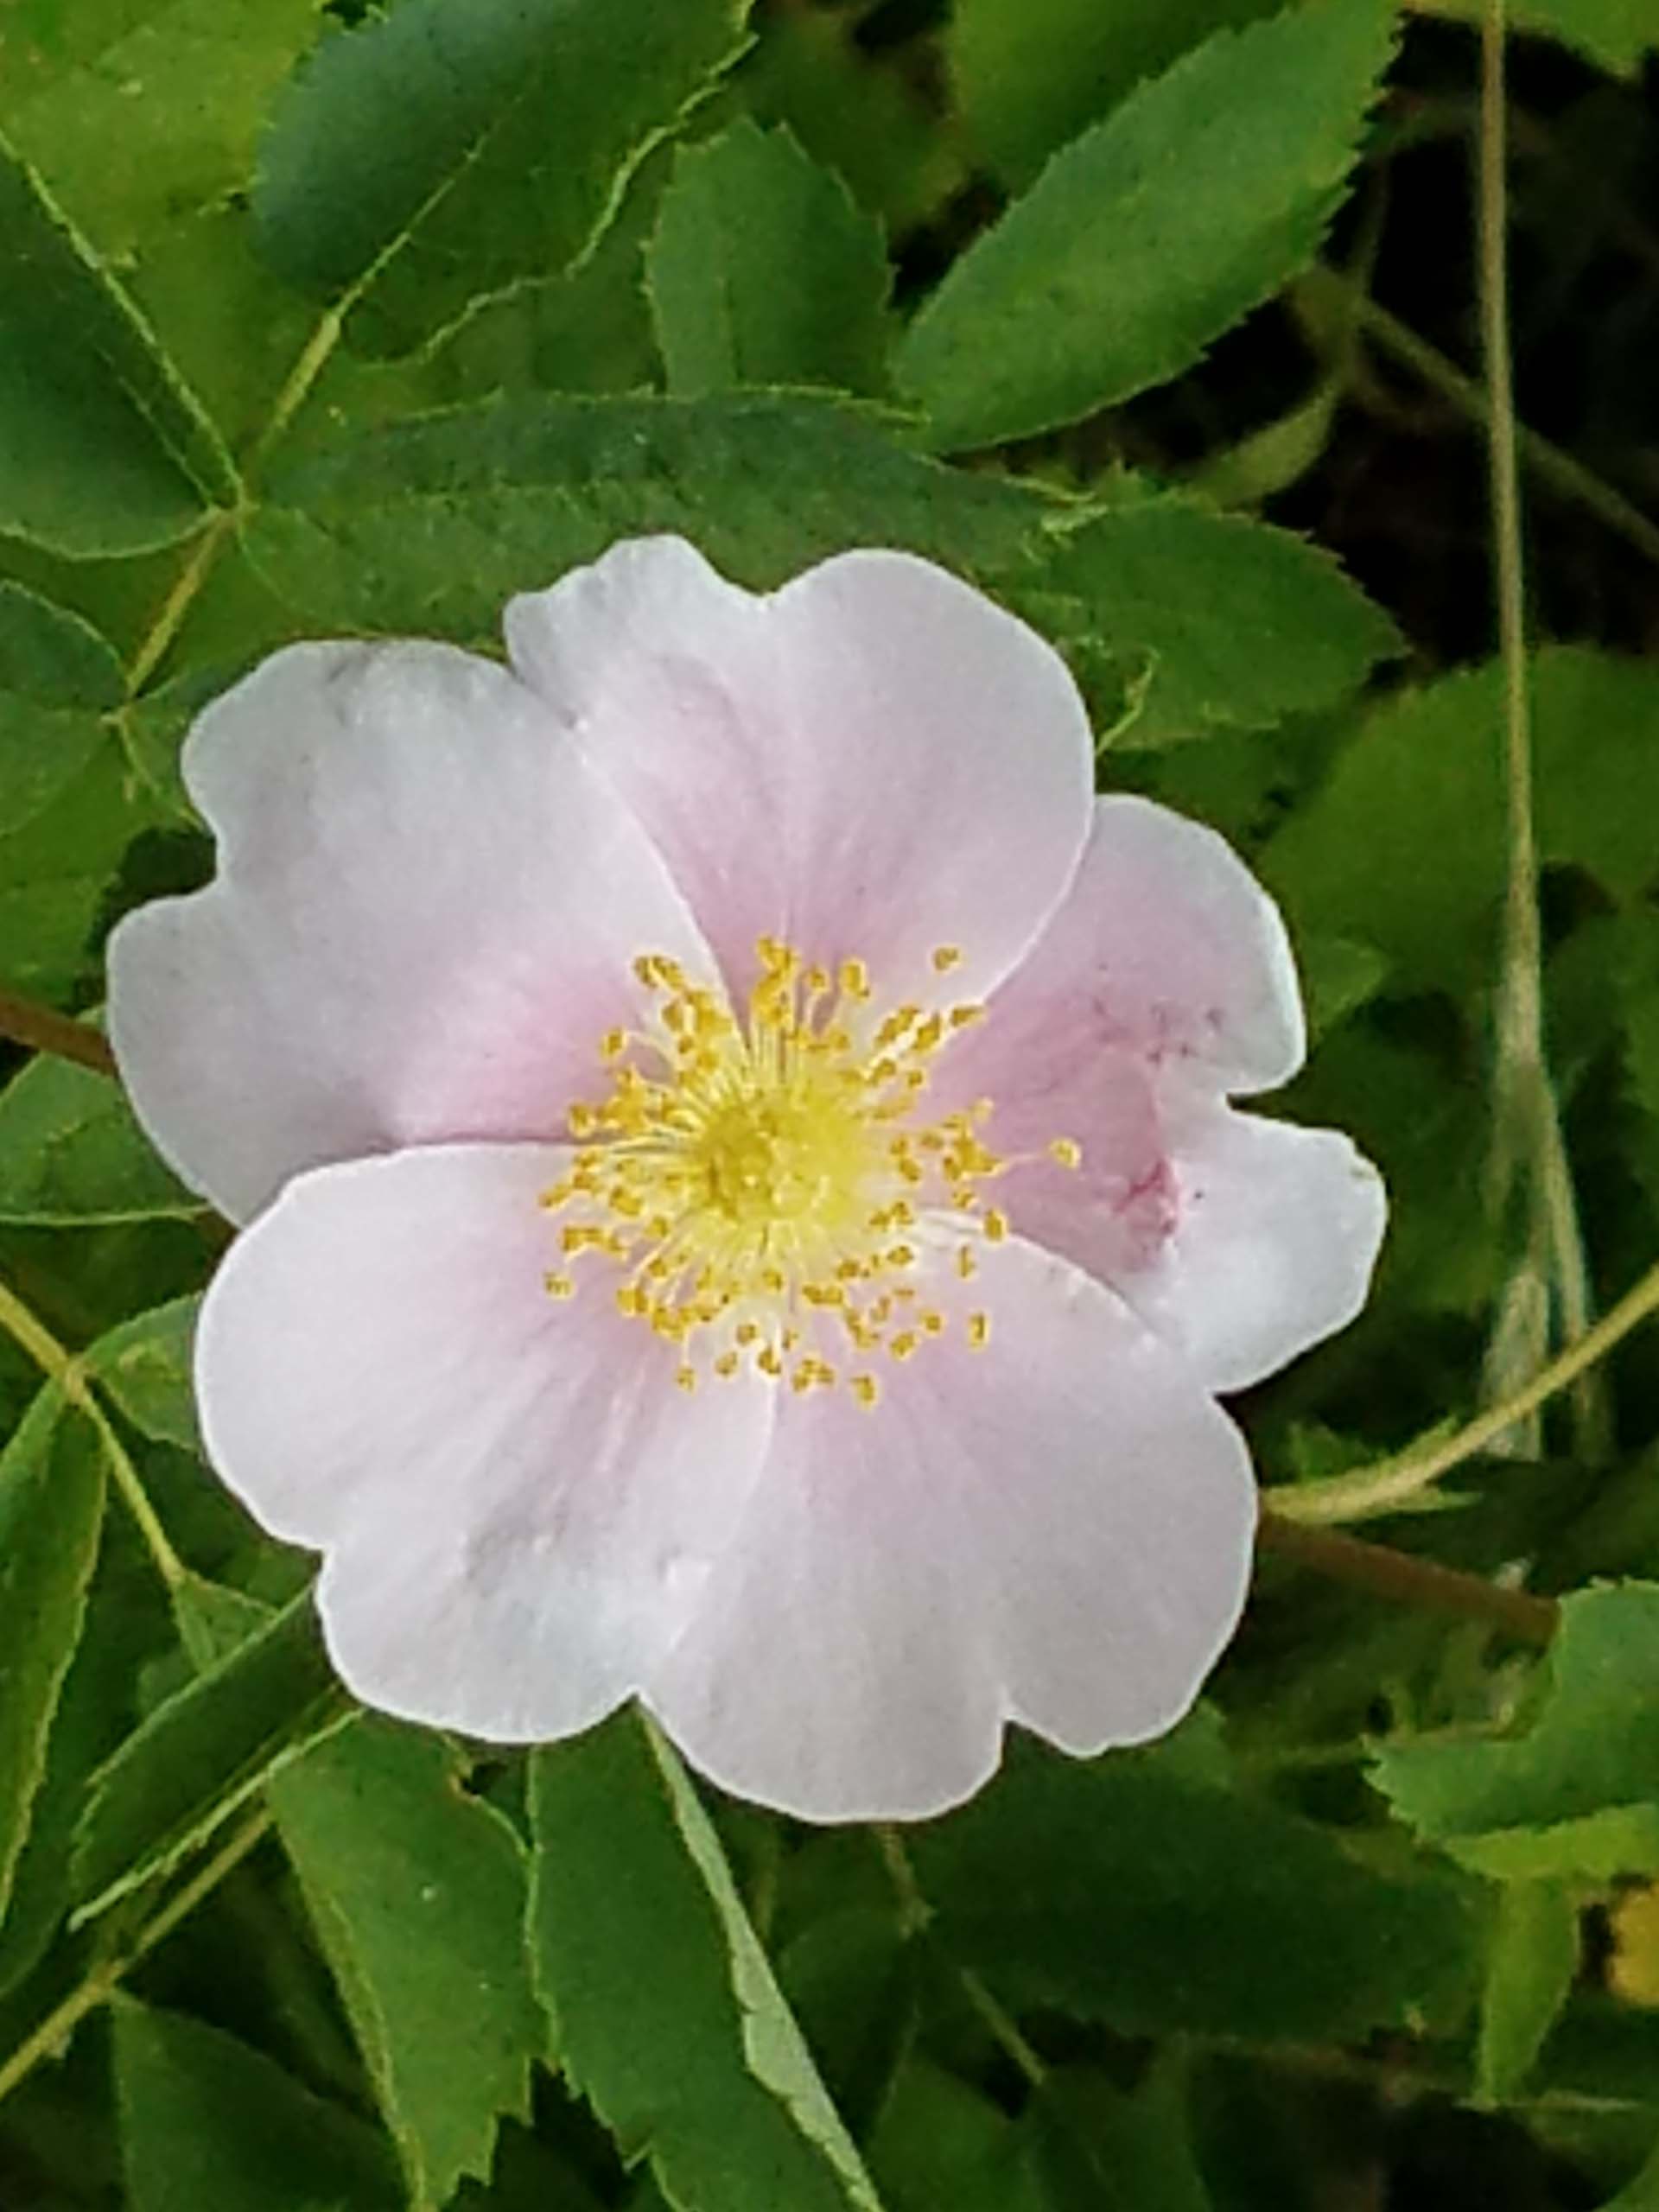 California rose. D. Mandel.